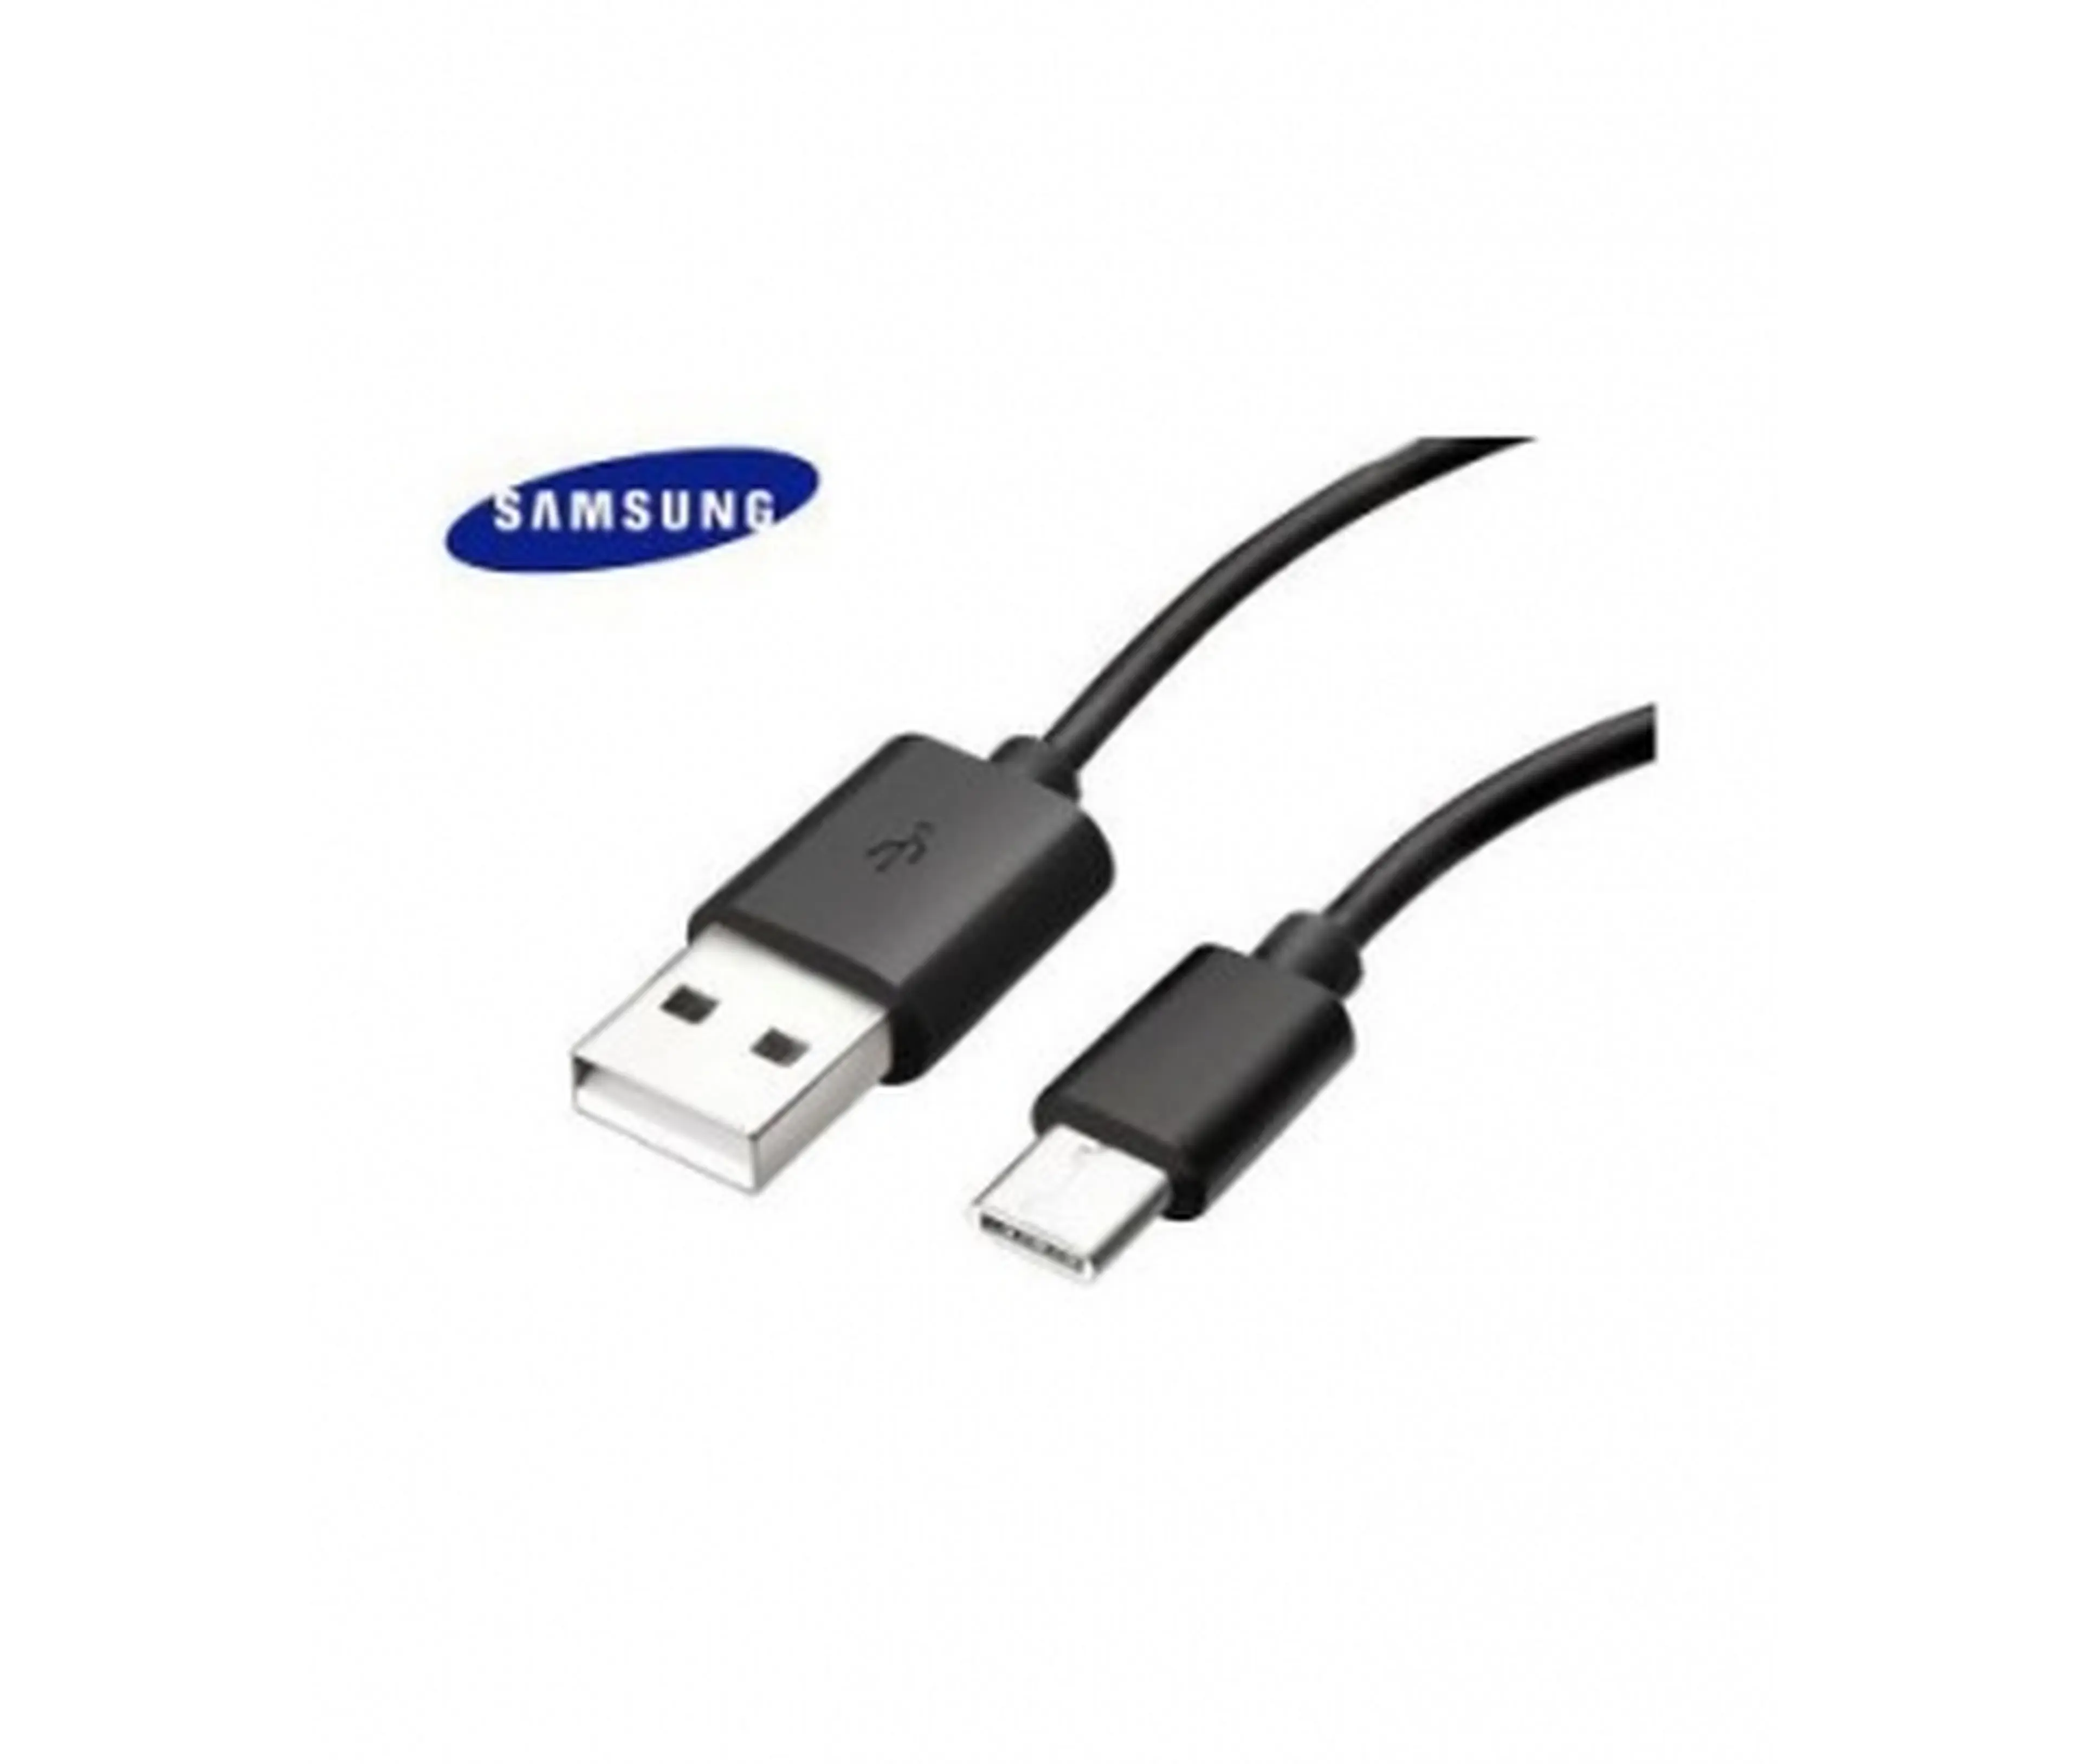 2. Cablu de date si incarcare Samsung micro usb/type-c original nou